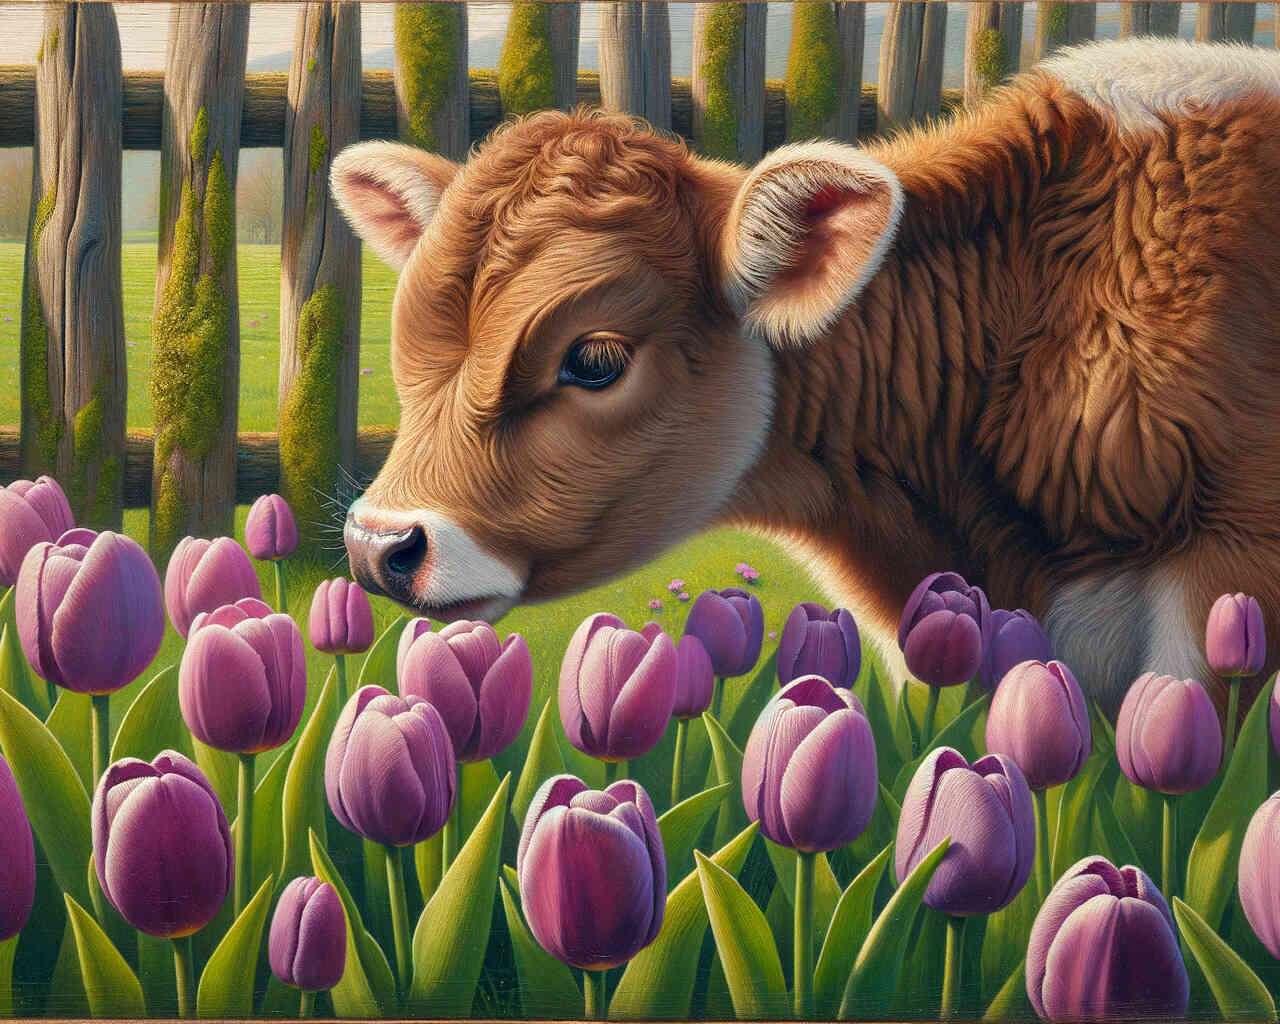 Diamond Painting - Kuh und Tulpen